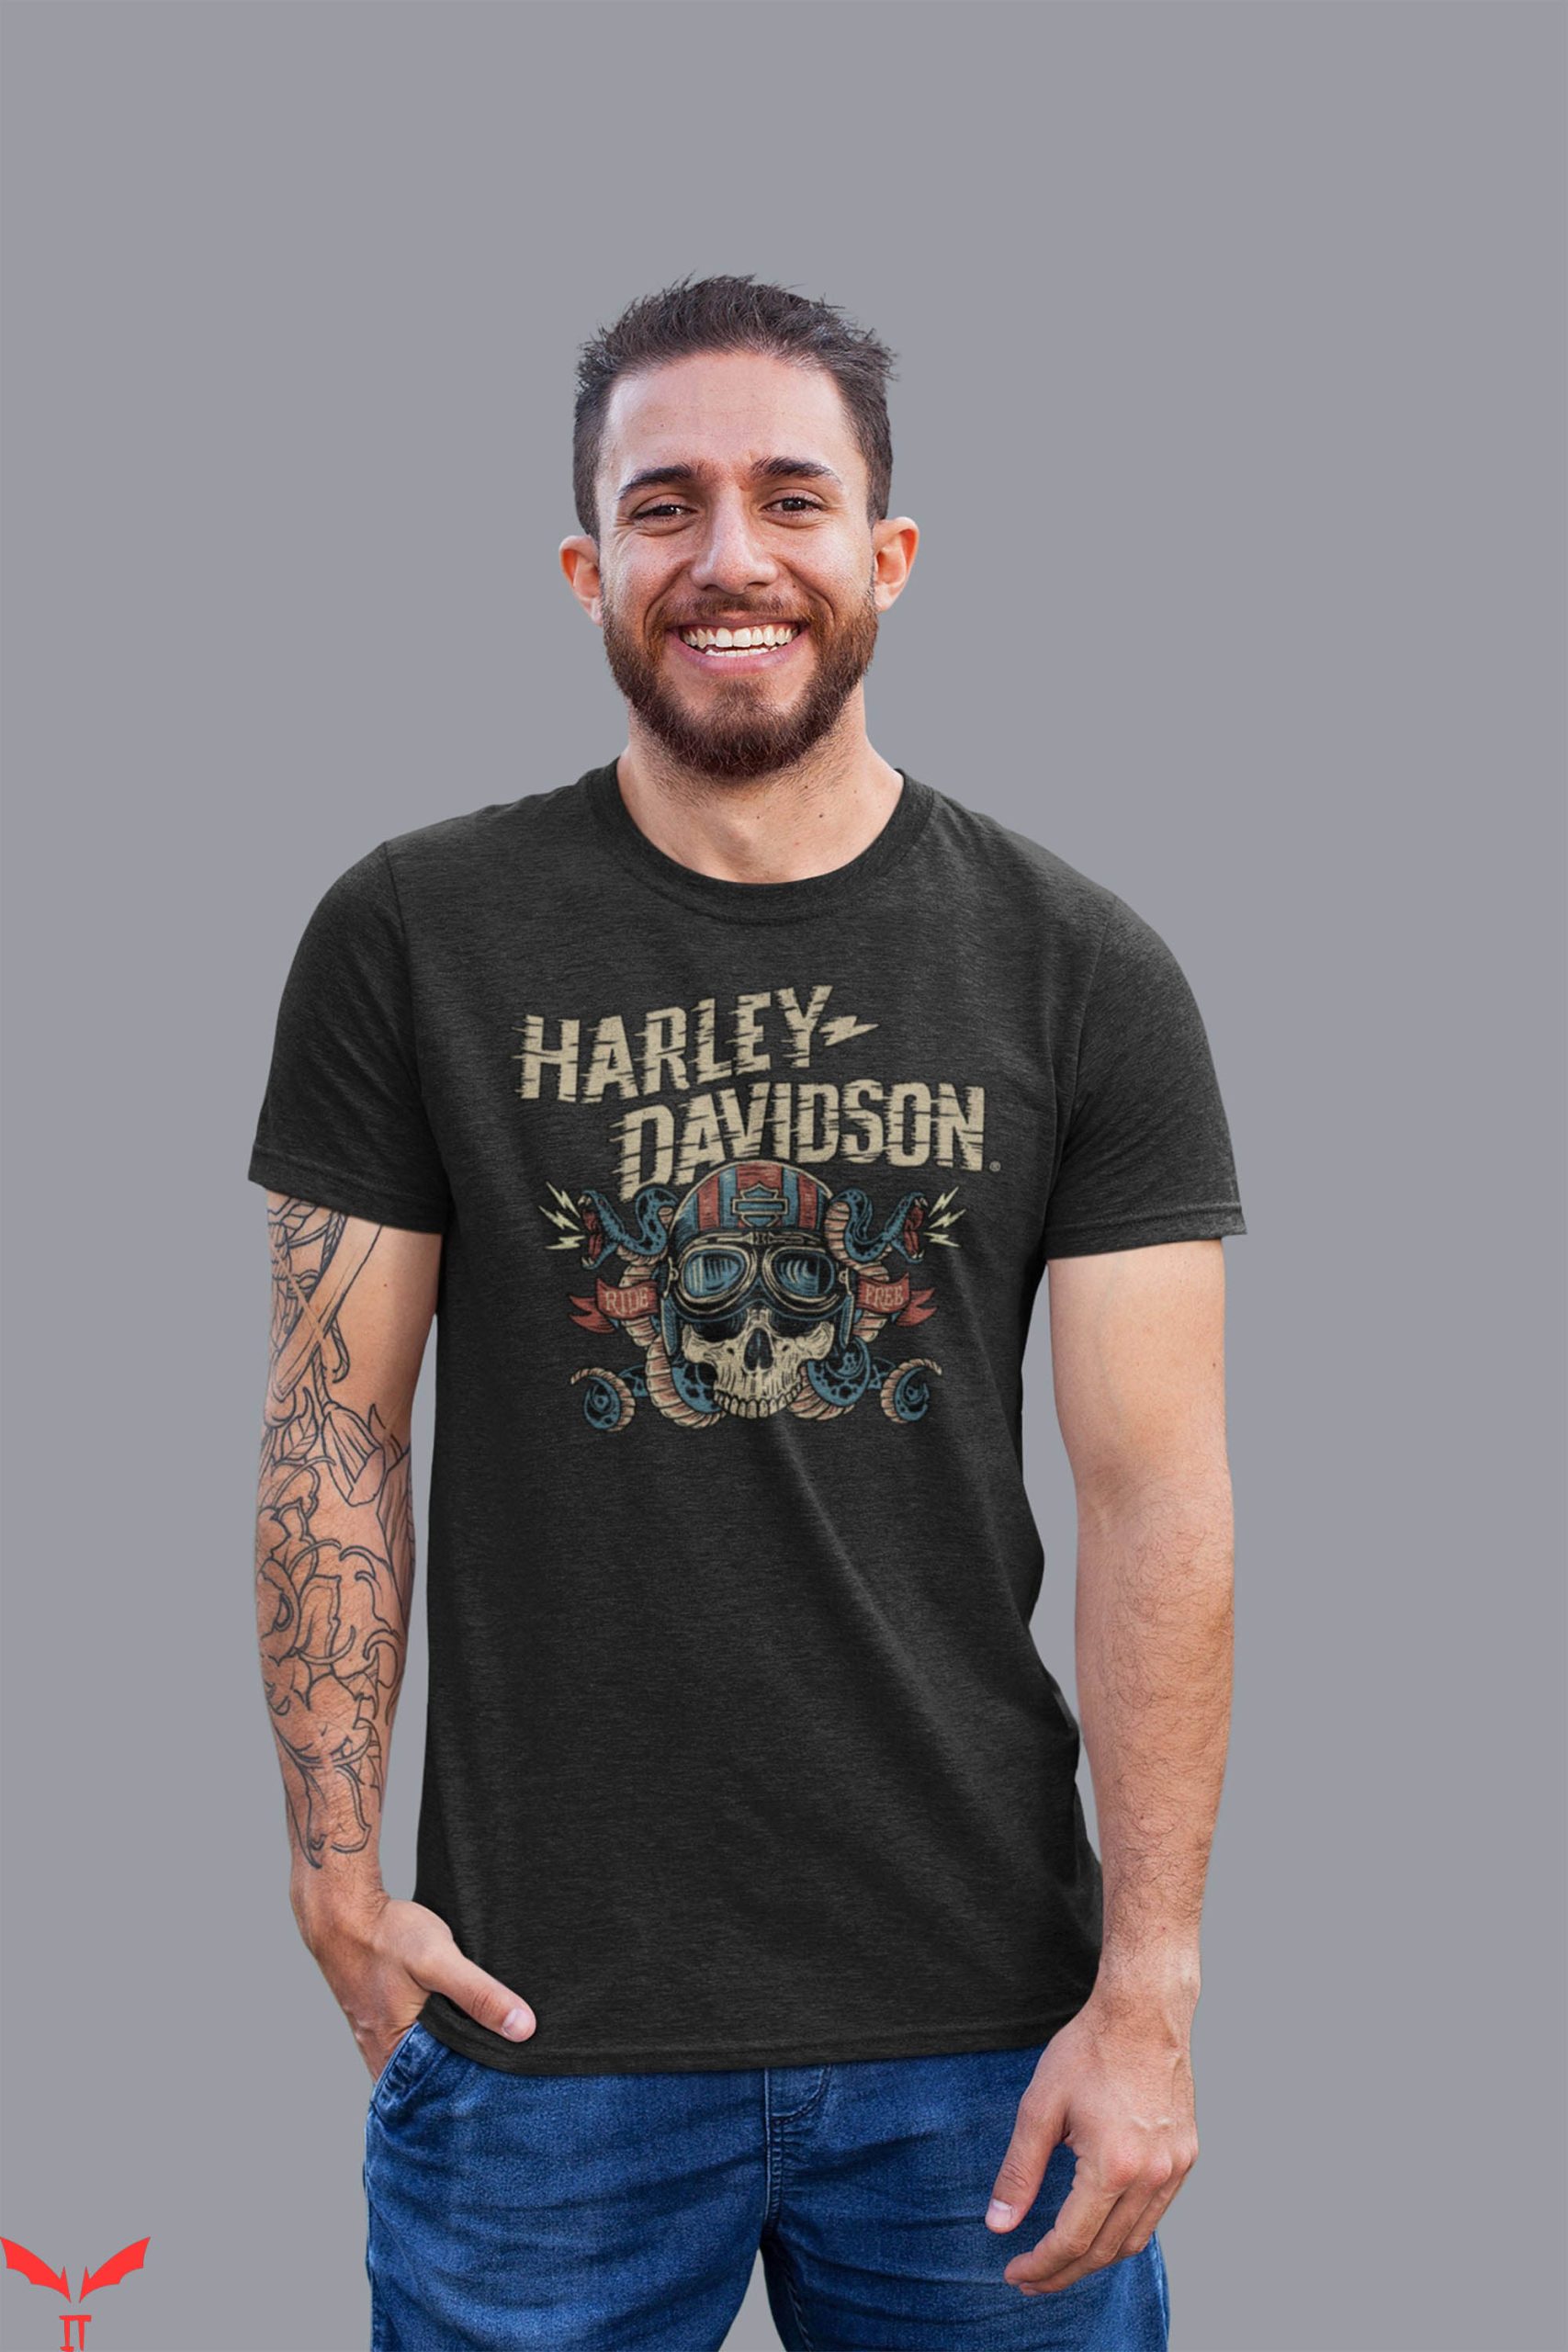 Harley Davidson Vintage T-Shirt Harley Skull Motorcyle Love